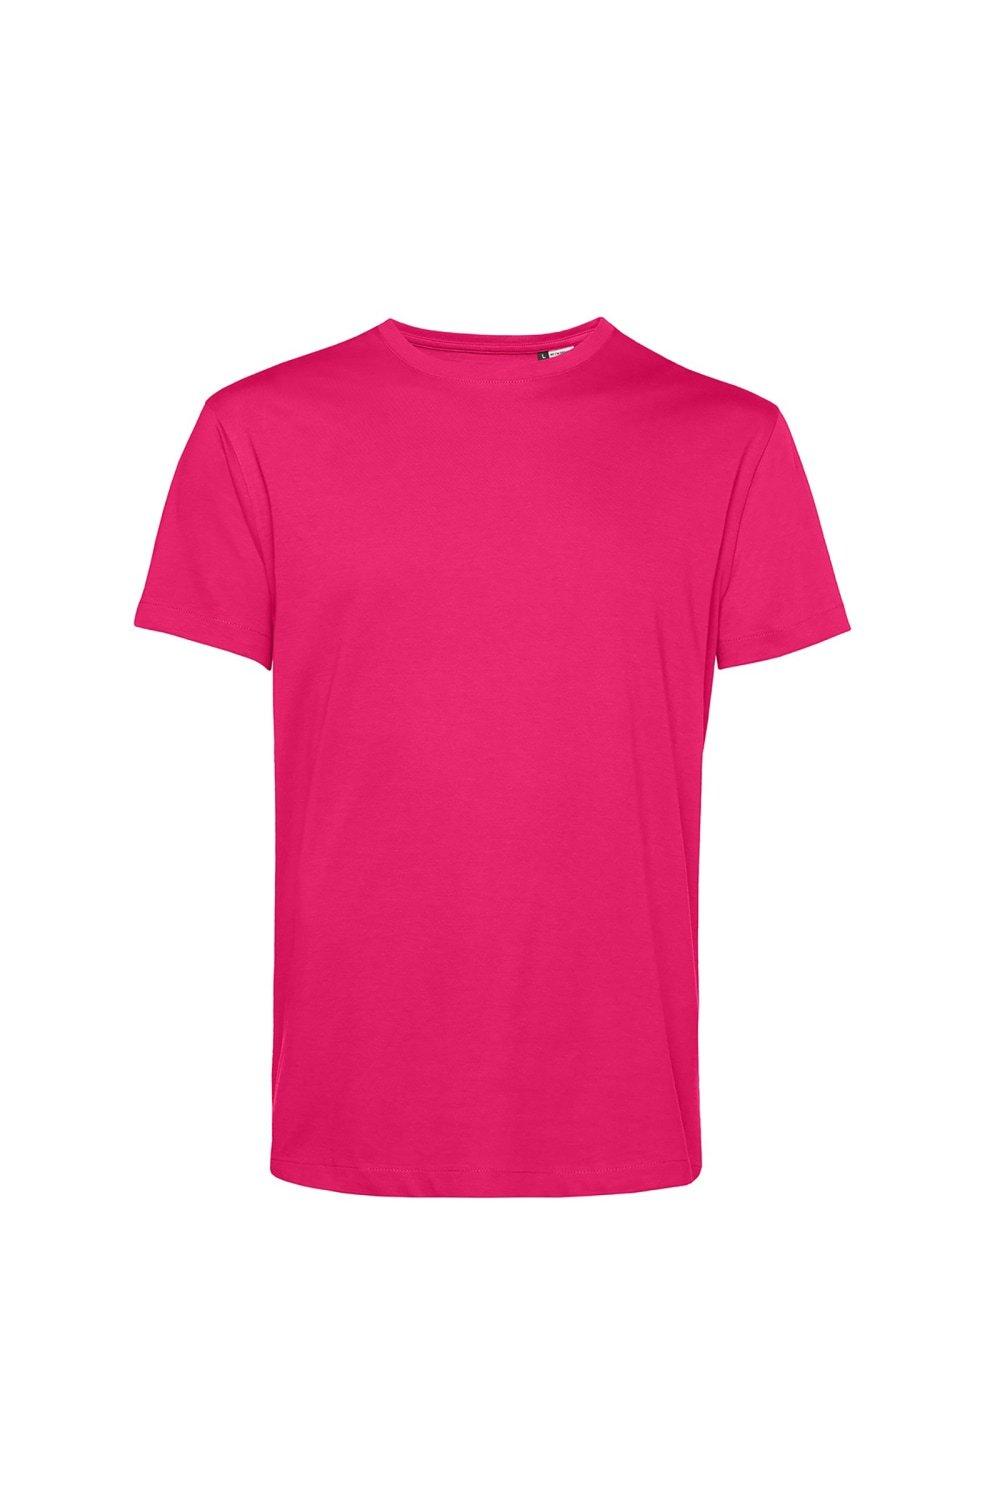 Органическая футболка E150 B&C, розовый